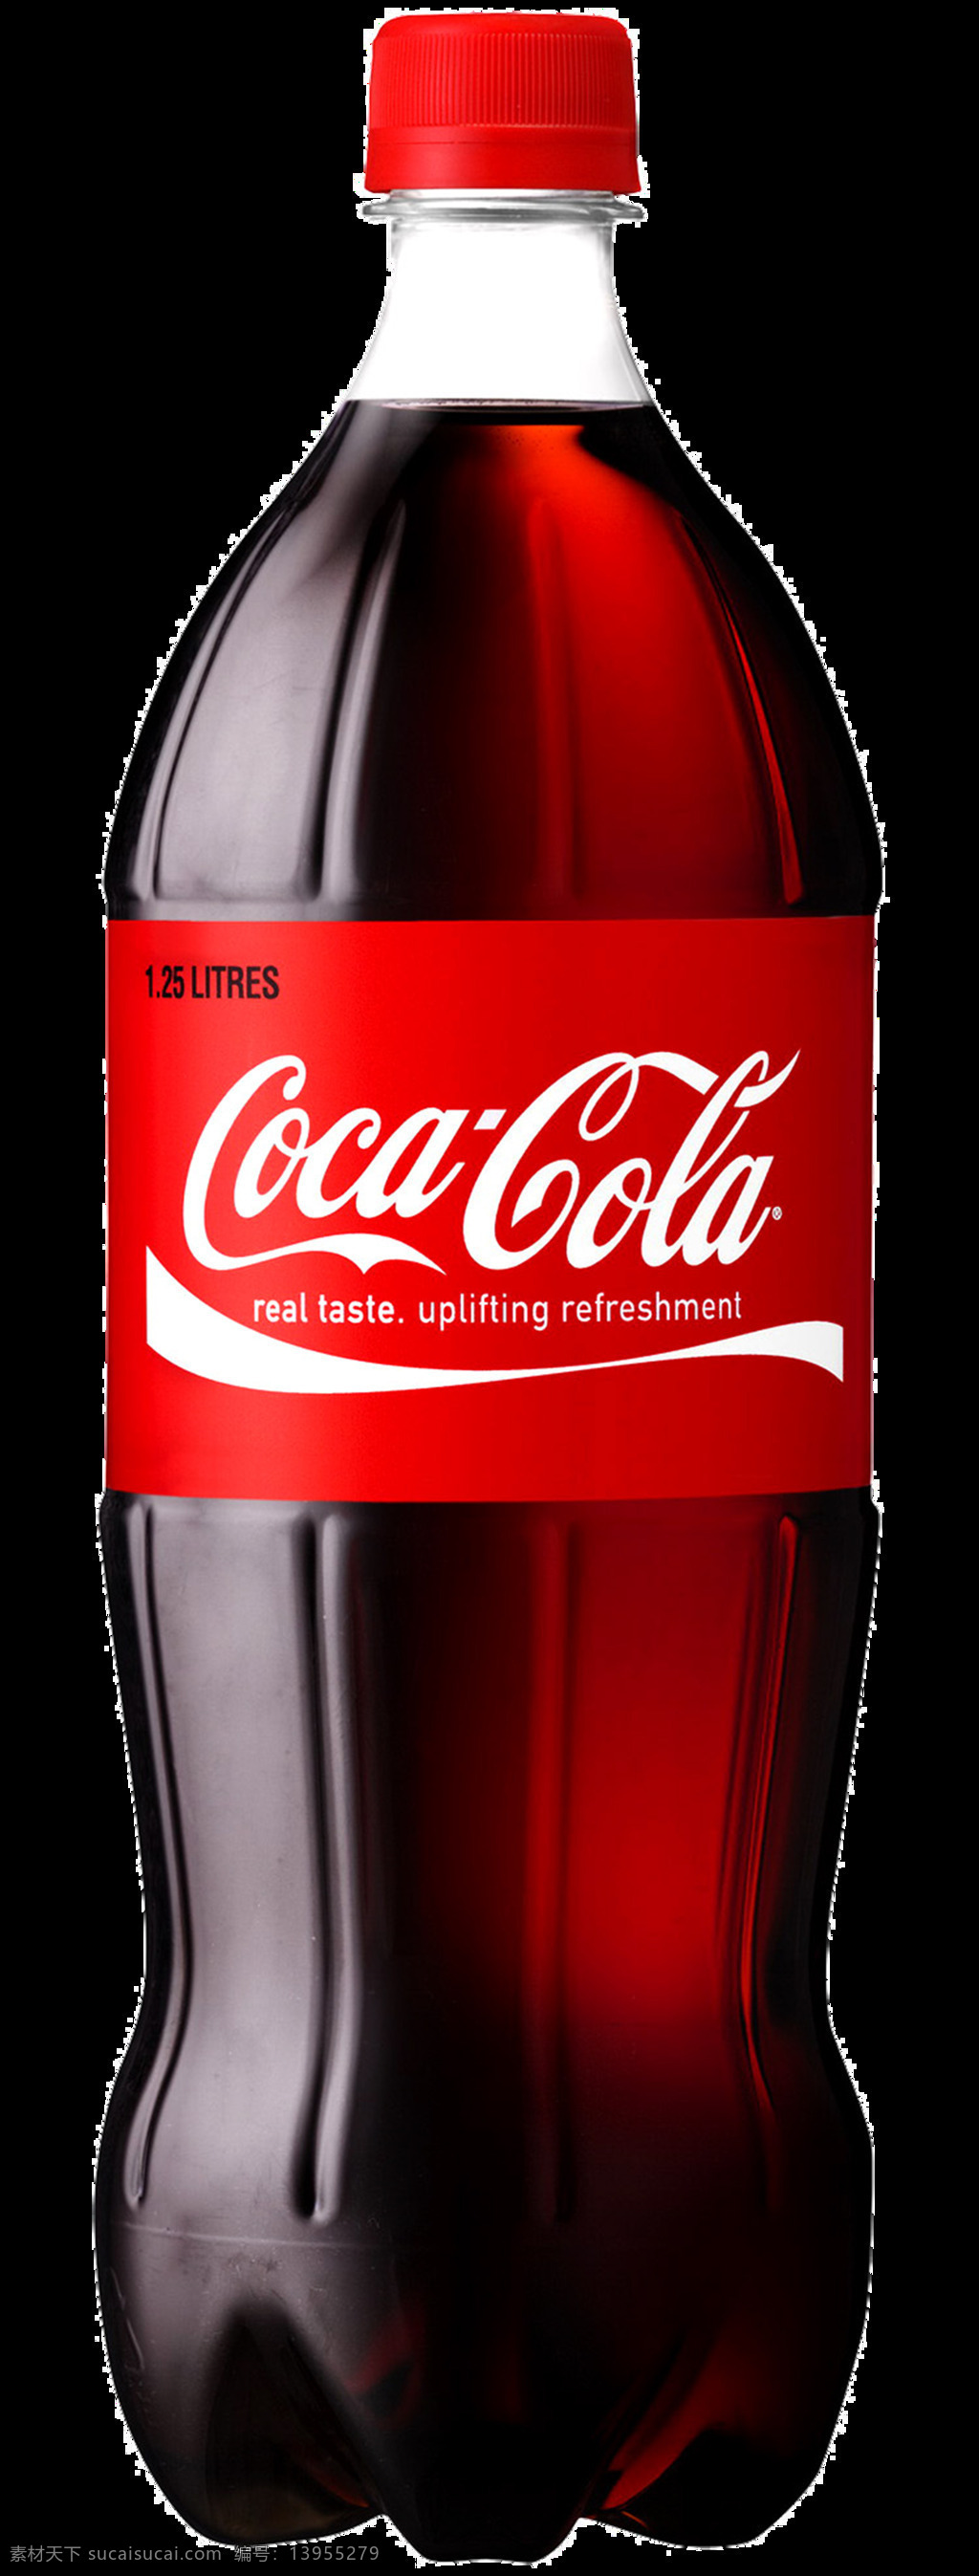 可乐图片 可乐 罐装可乐 瓶装可乐 碳酸饮料 汽水 png图 透明图 免扣图 透明背景 透明底 抠图